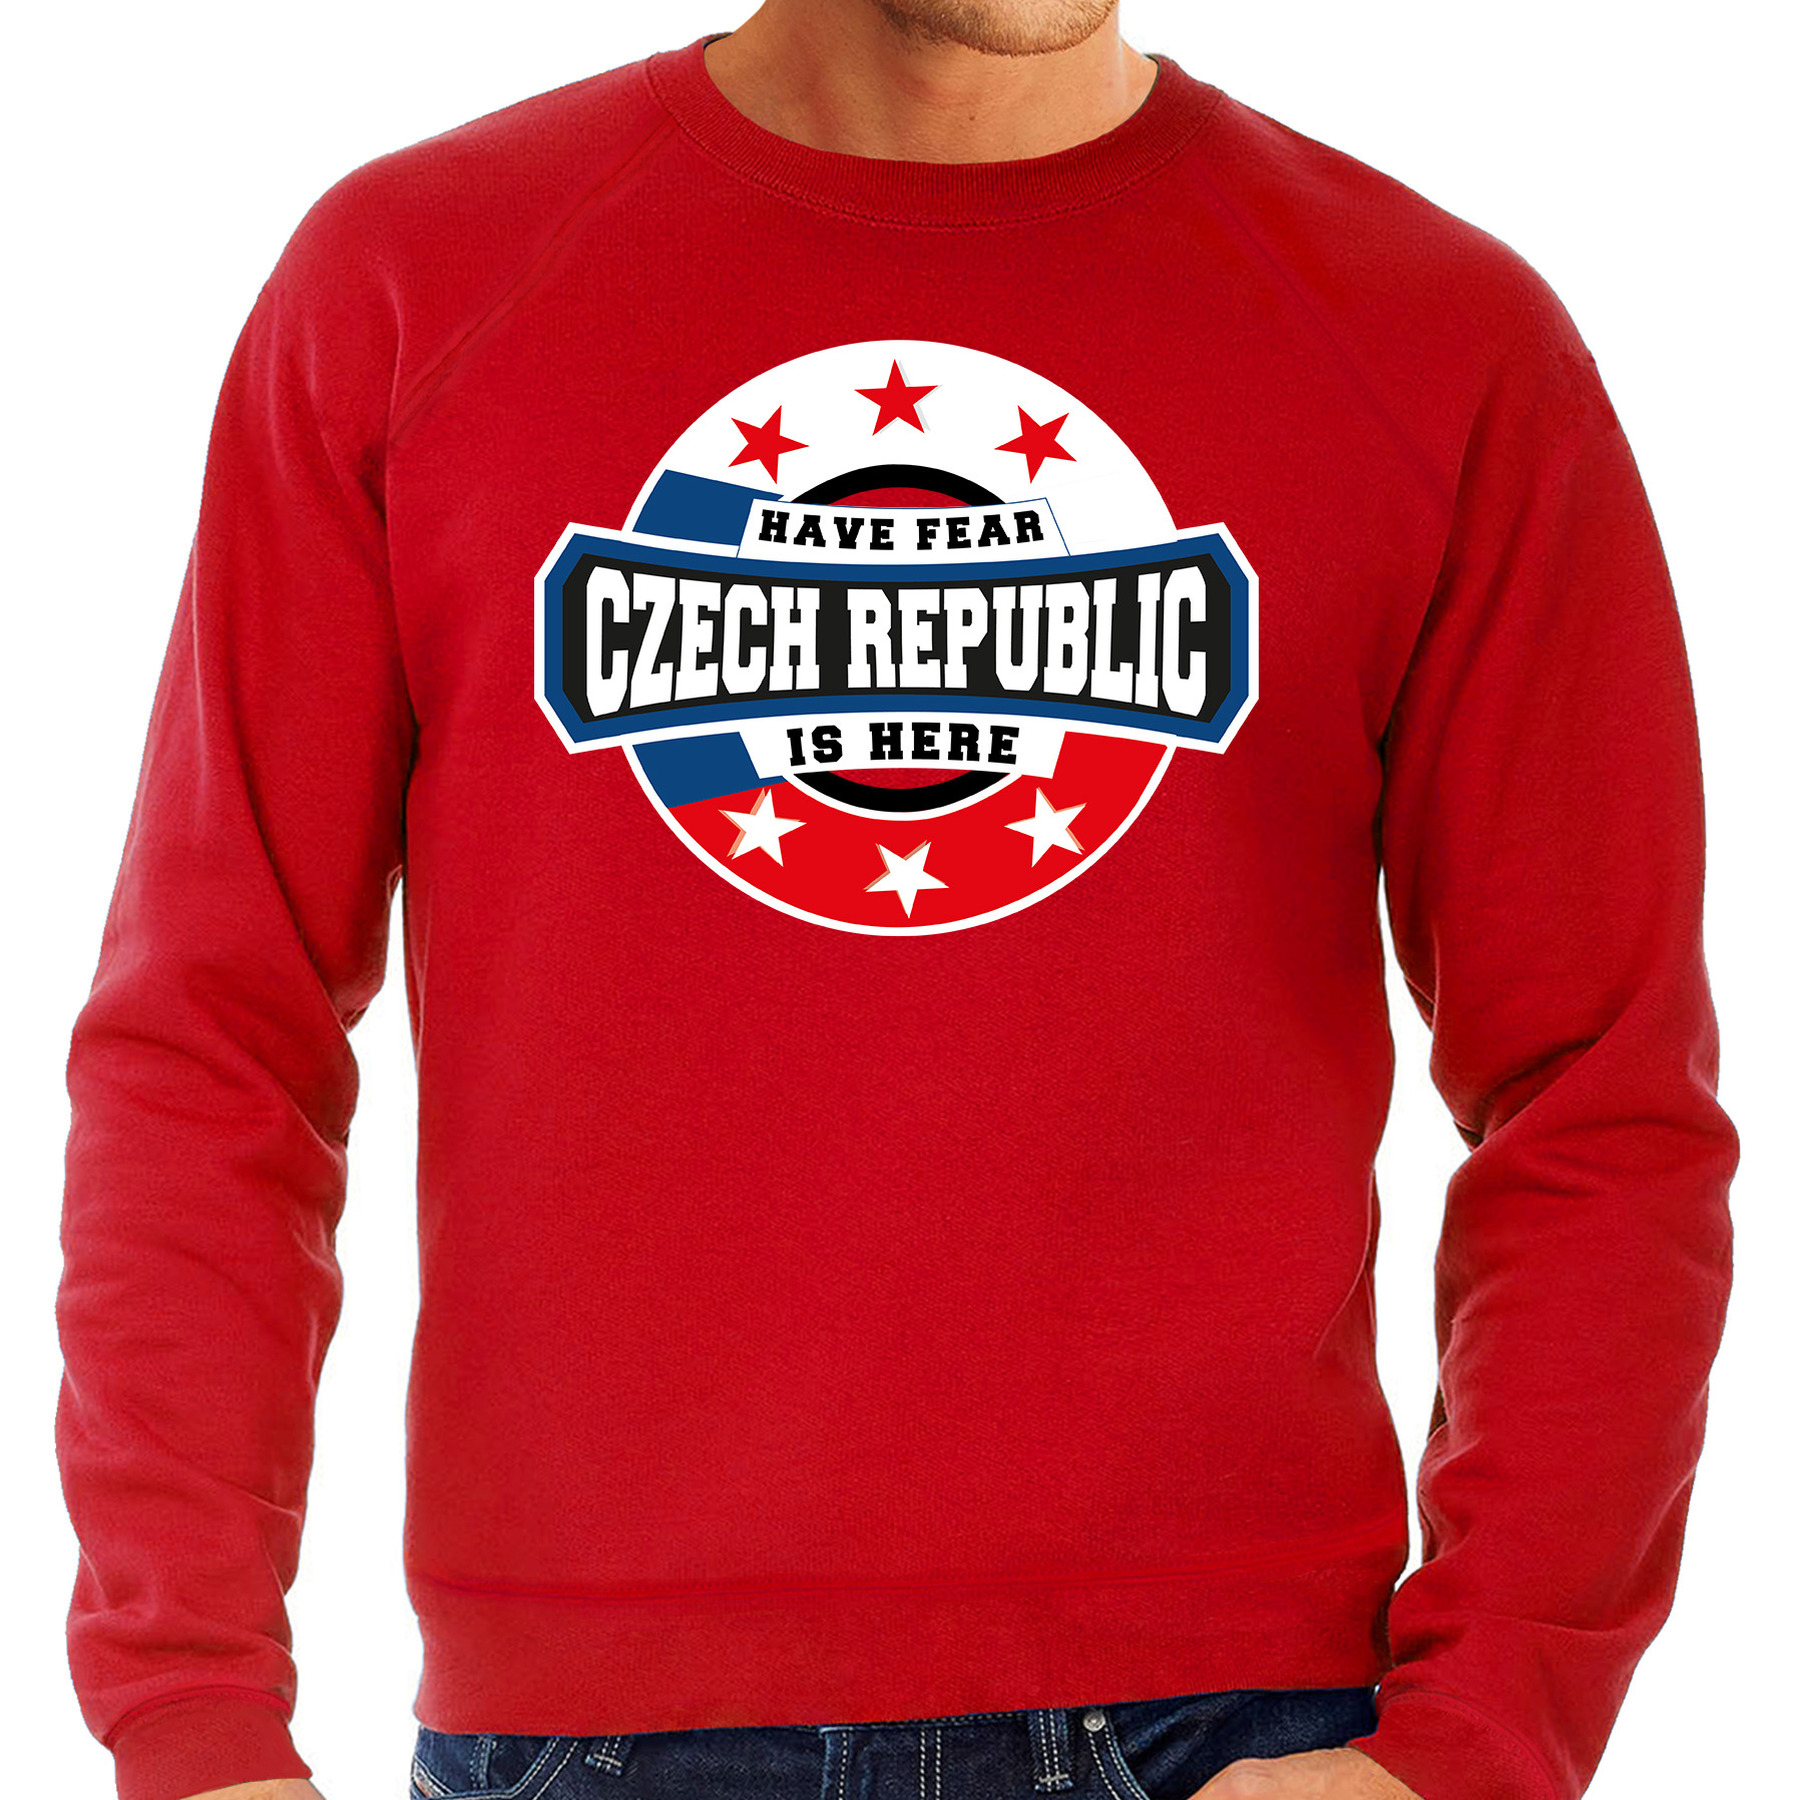 Have fear Czech republic-Tsjechie is here supporter trui-kleding met sterren embleem rood voor heren